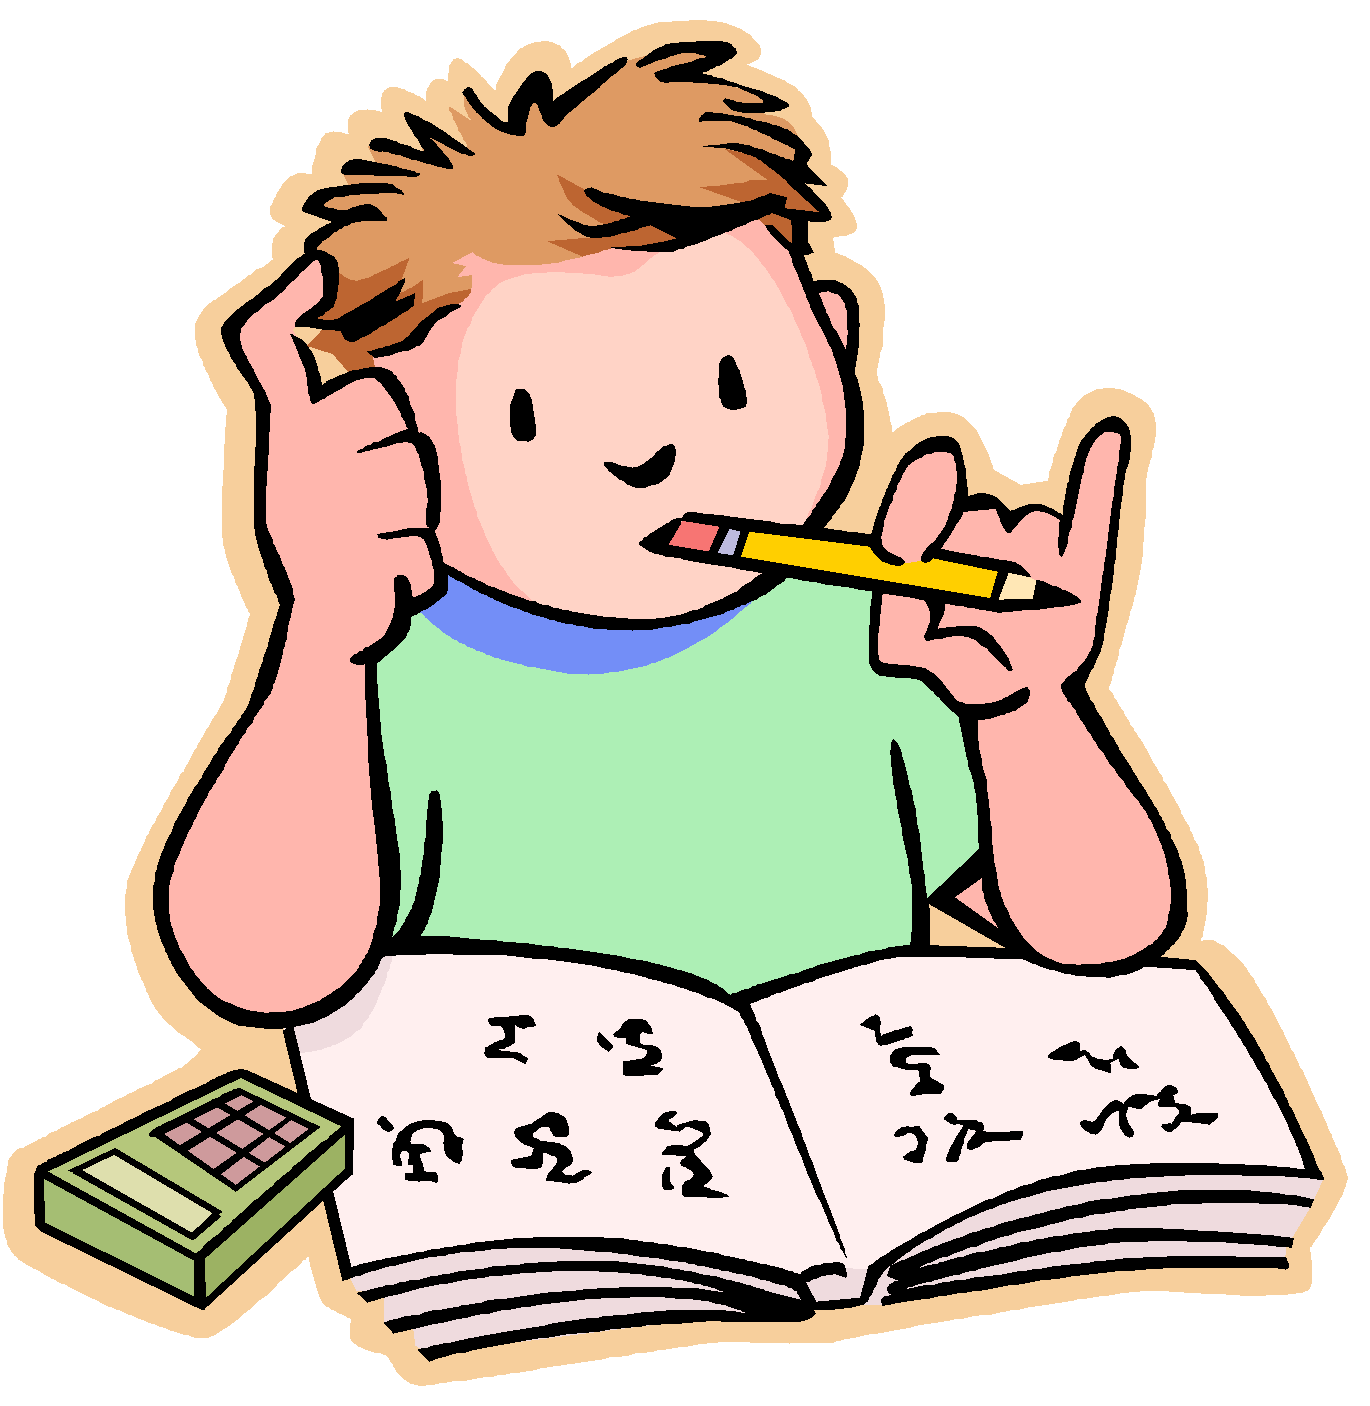 Методическое пособие «Сборник творческих задач по математике для 5-9 классов»